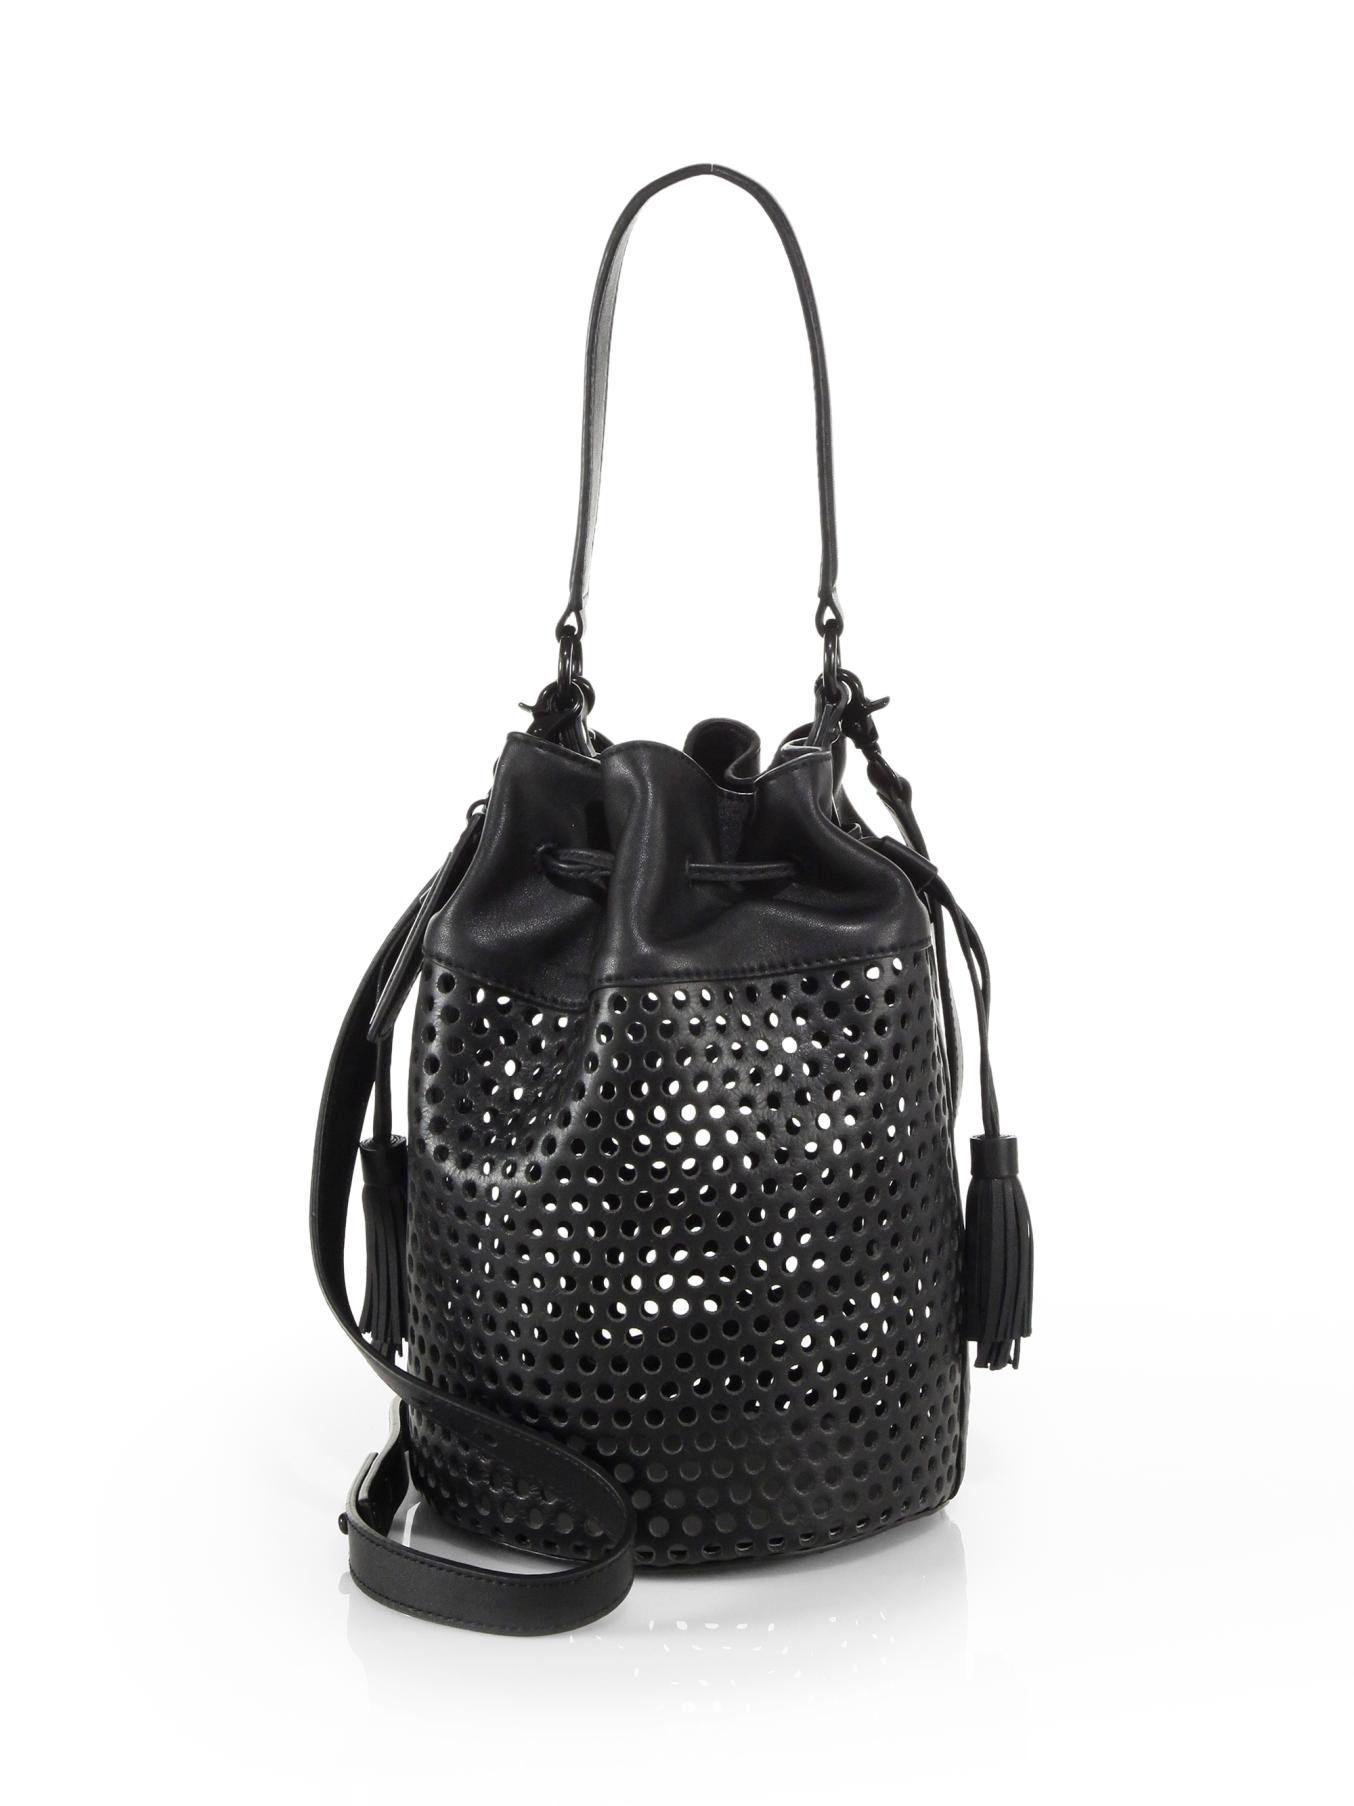 Loeffler randall Perforated Bucket Bag in Black | Lyst